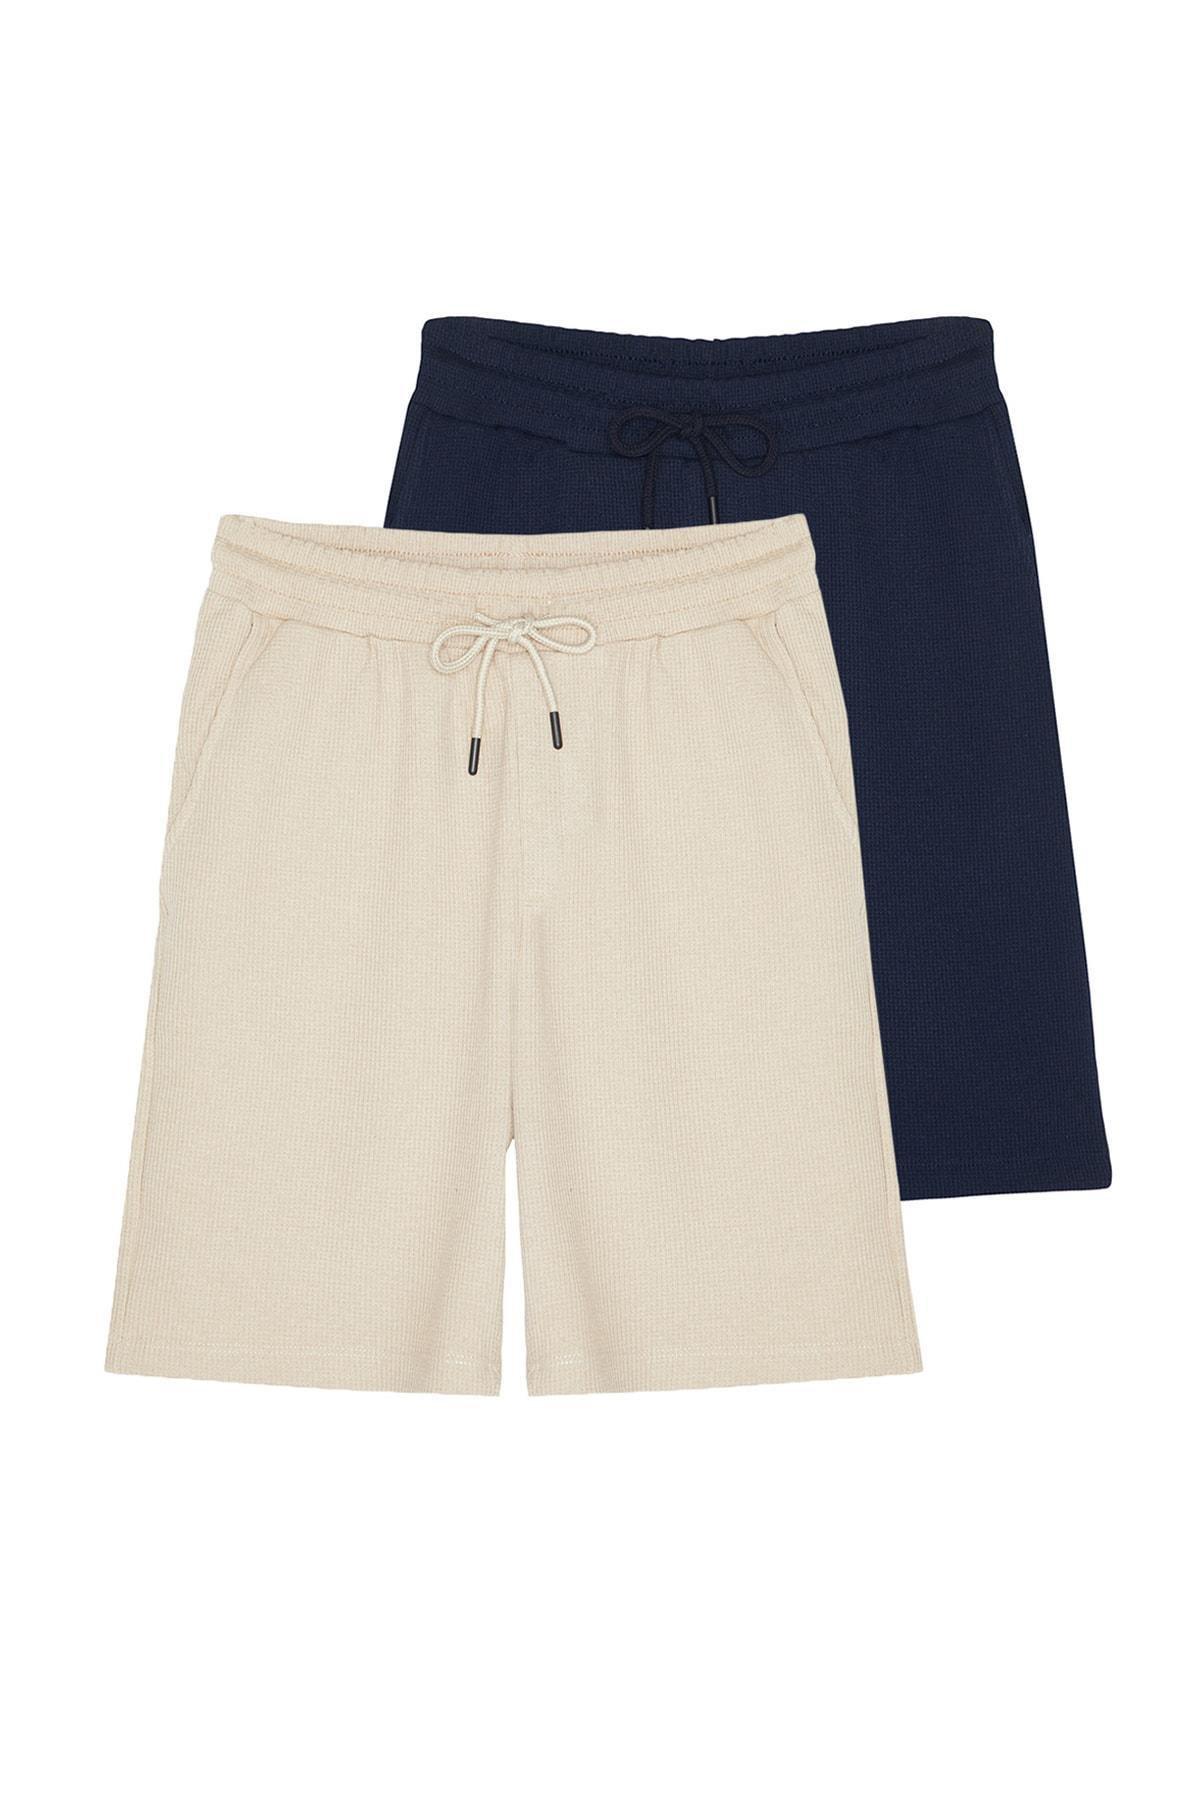 Trendyol - Navy Mid Waist Shorts